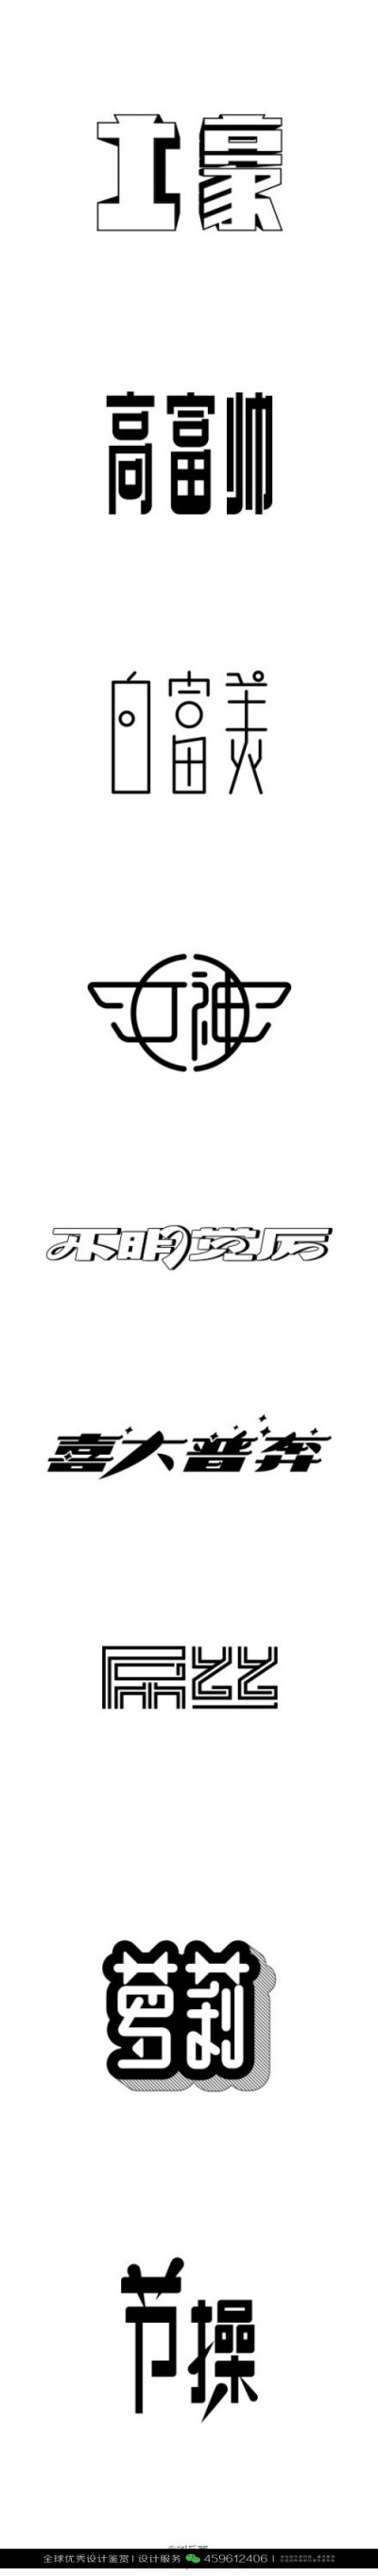 字体设计汉字中文优秀LOGO设计标志品牌设计作品 (981)